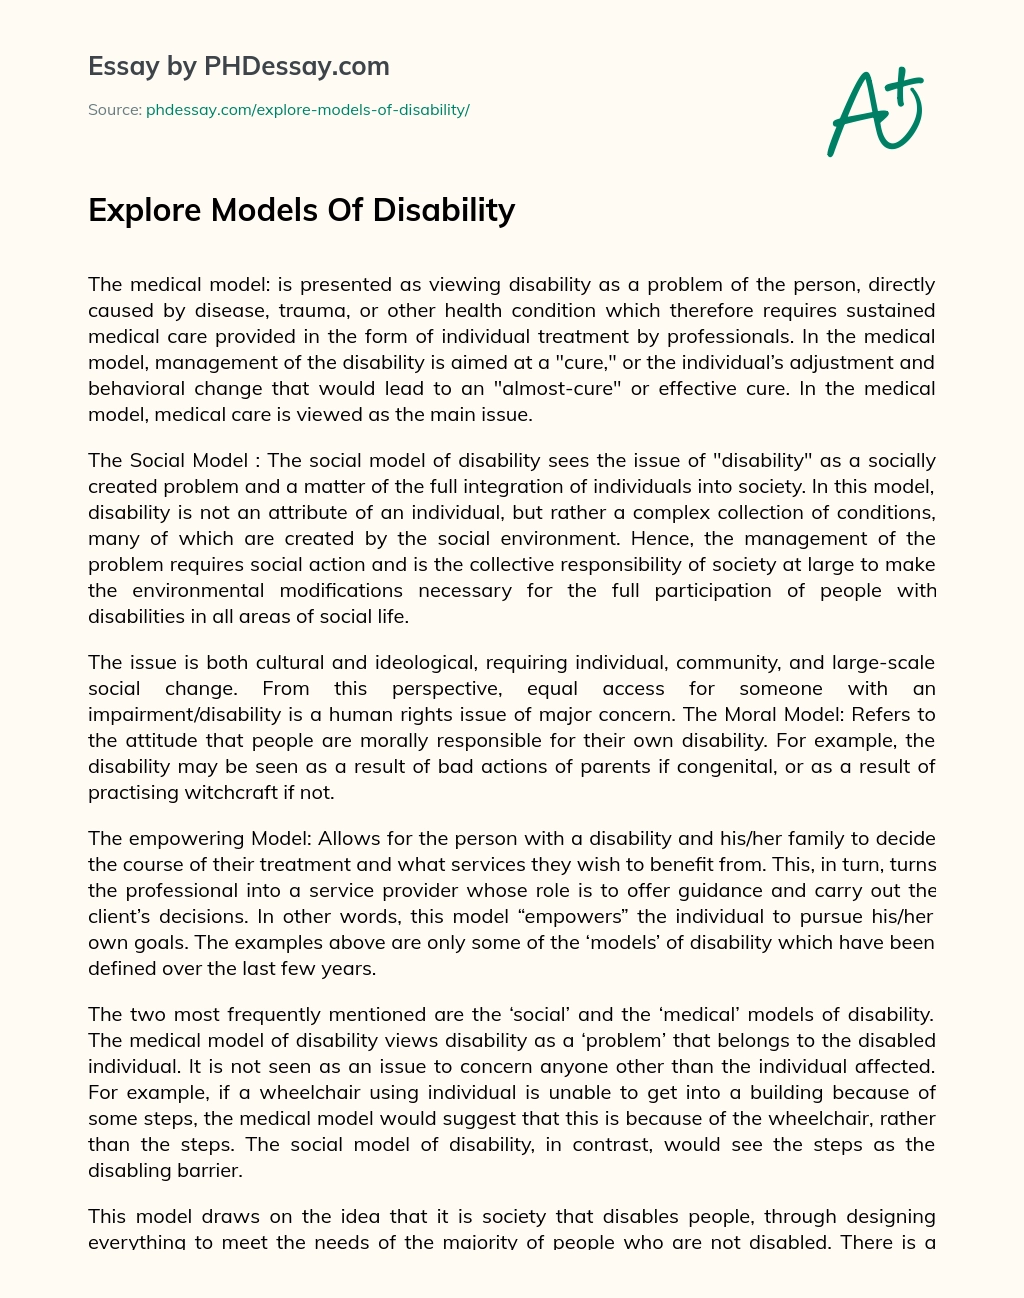 Explore Models Of Disability essay